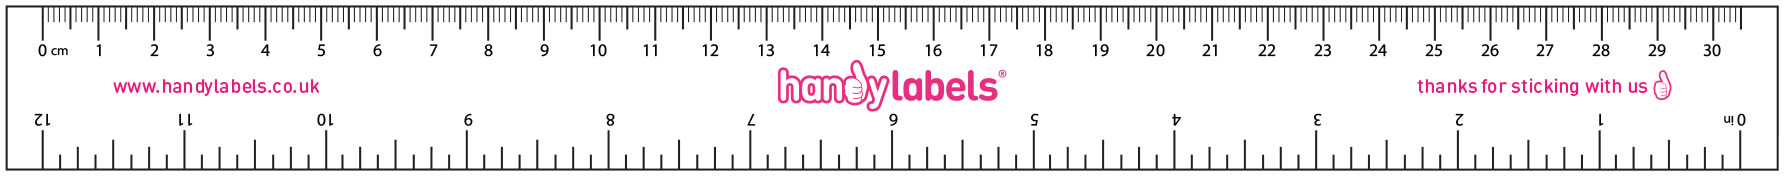 handy labels ruler